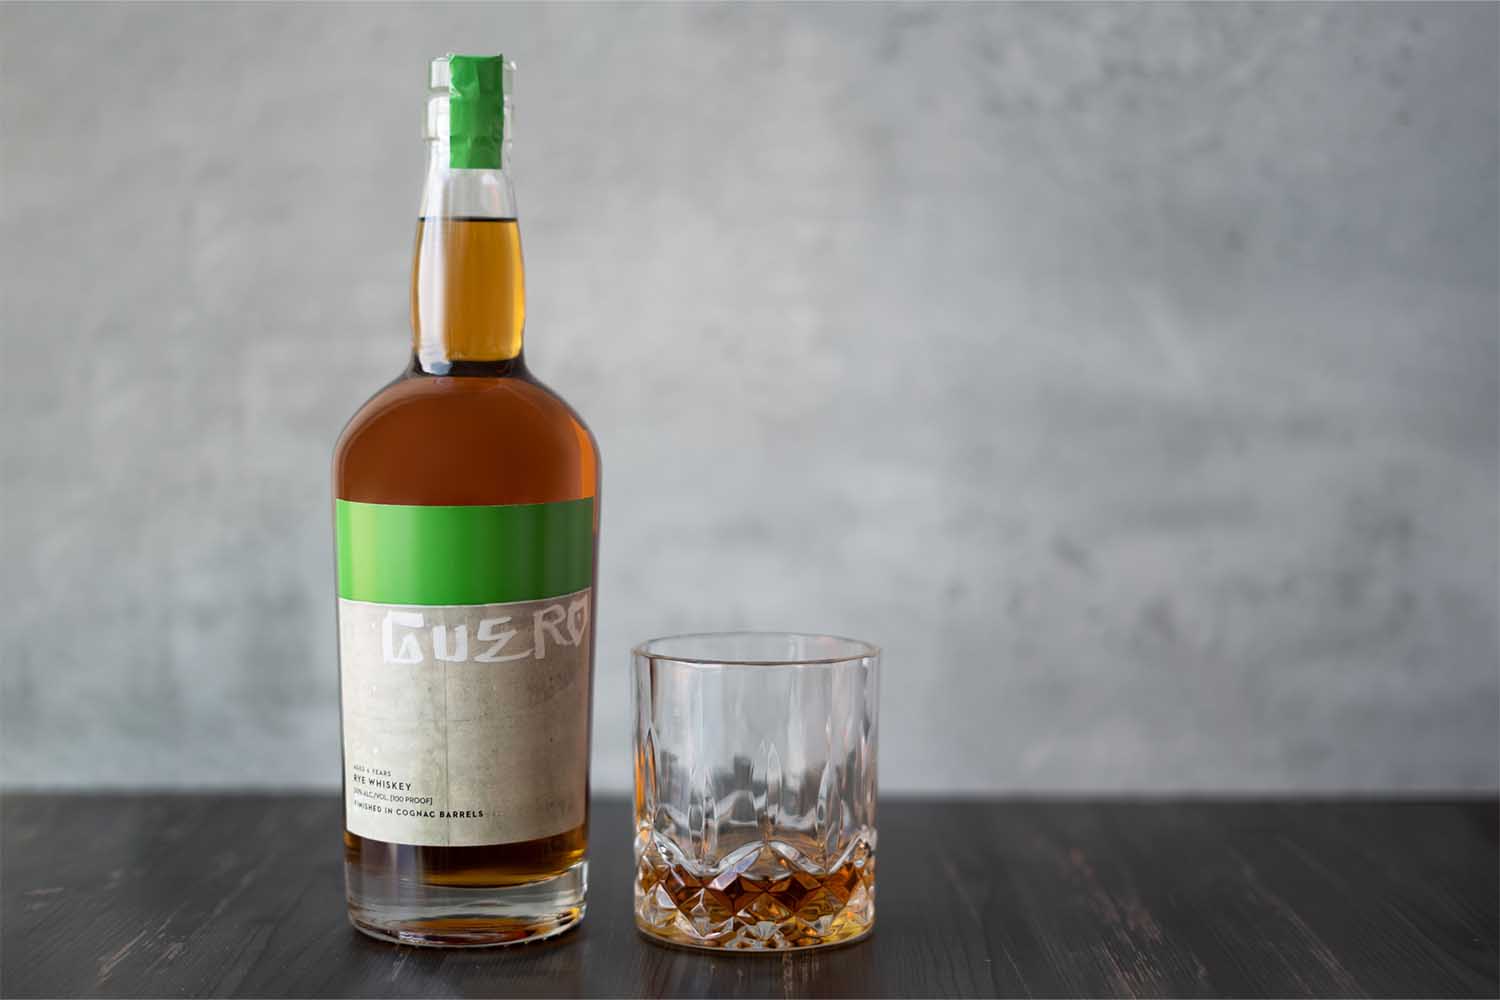 Guero 6-Year Rye Whiskey